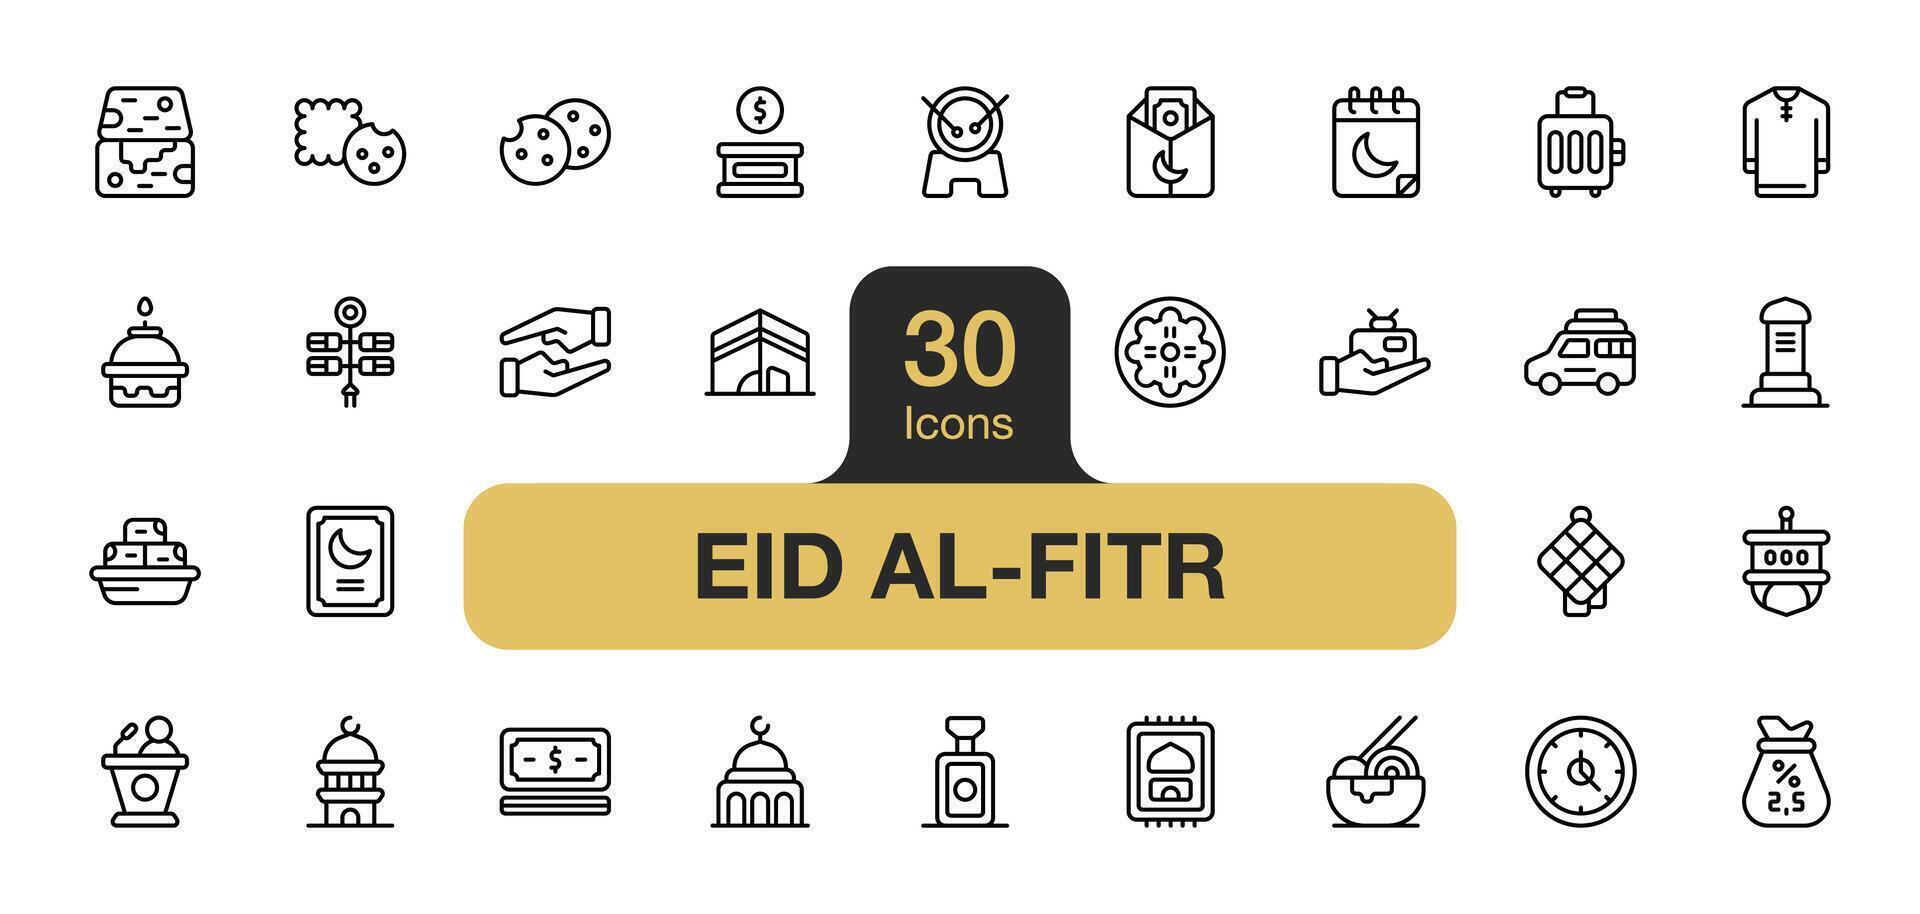 uppsättning av 30 eid al-fitr ikon element set. inkluderar ramadan, moské, gåva, pengar, lampa, zakat, donation, och Mer. översikt ikoner vektor samling.